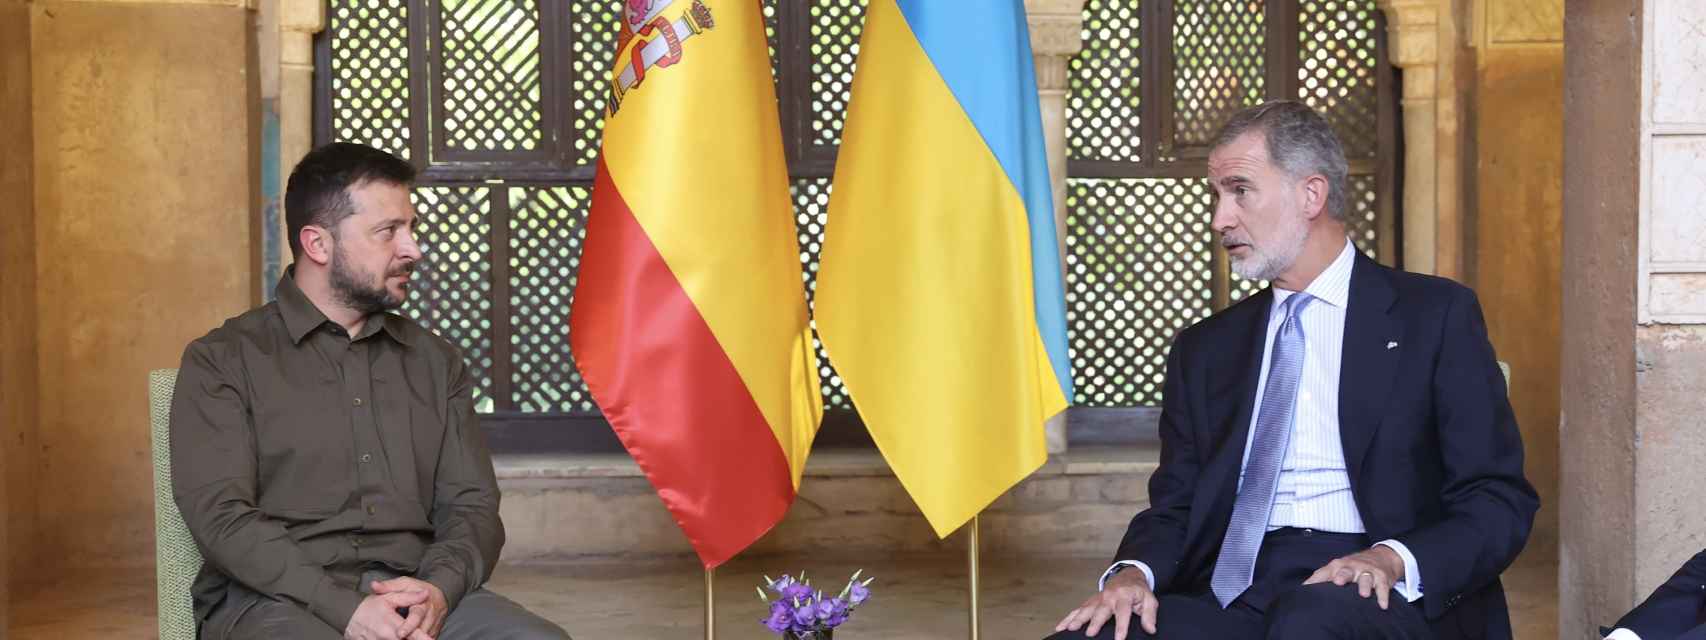 El Rey Felipe VI se reúne con el presidente de Ucrania, Volodimir Zelenski, en la Alhambra durante la cumbre de la Comunidad Política Europea en octubre de 2023.